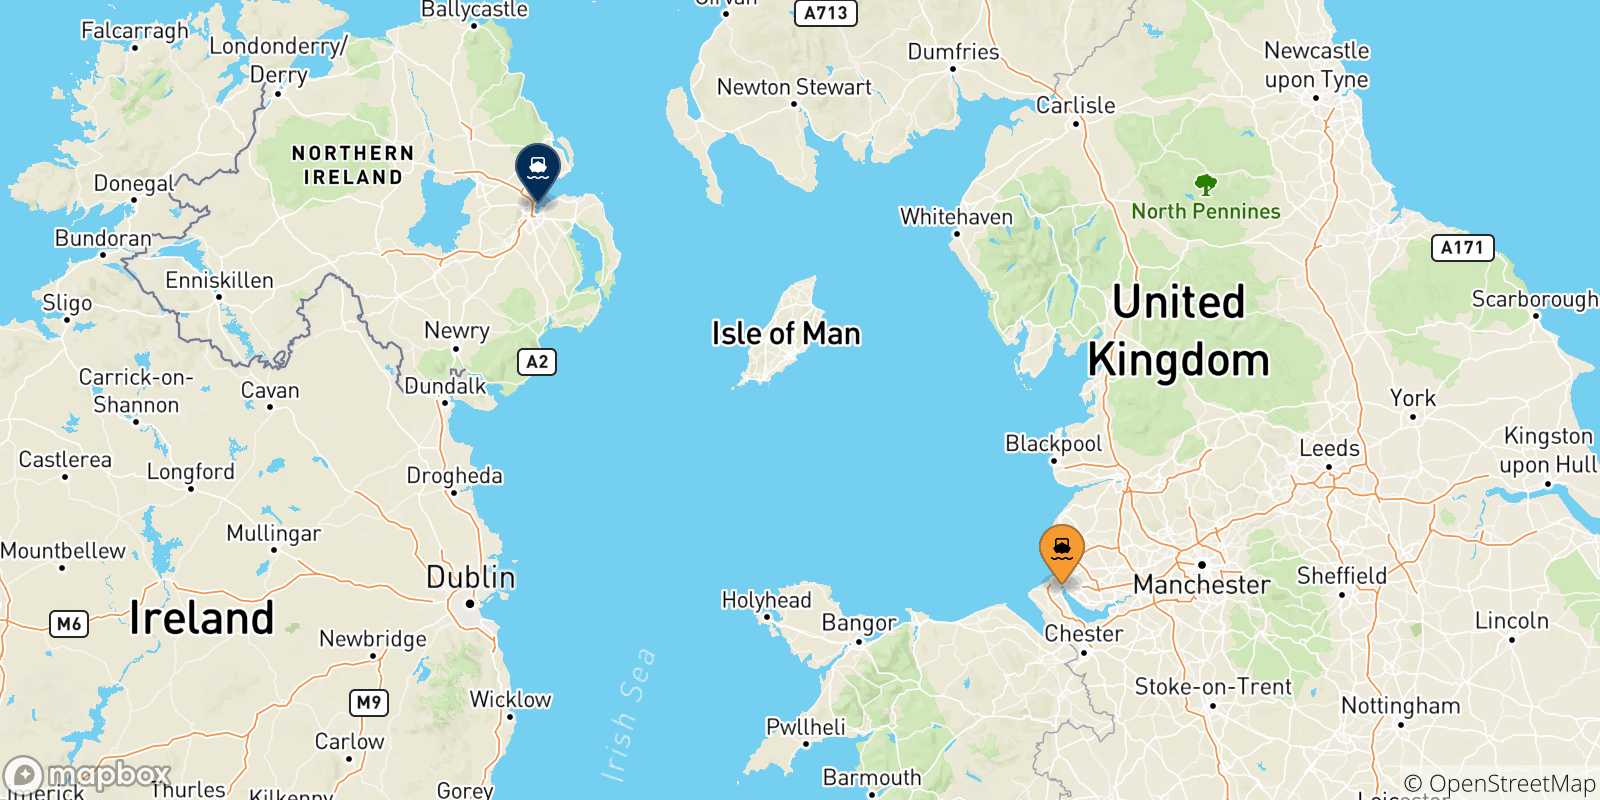 Mappa delle possibili rotte tra l'Inghilterra e Belfast